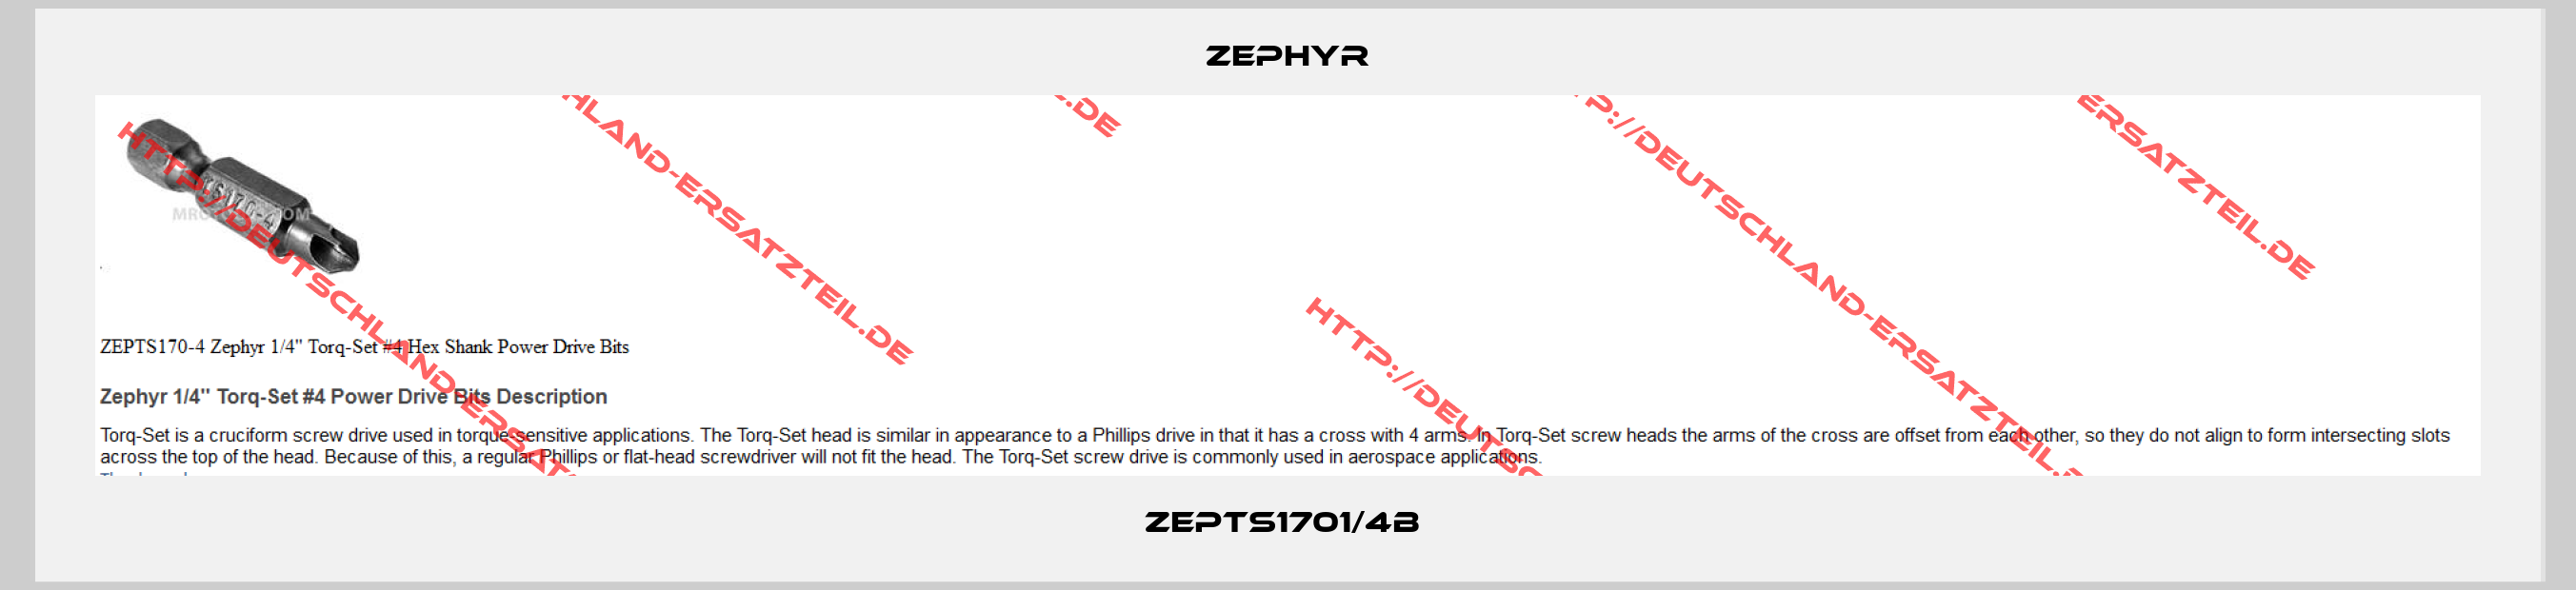 Zephyr-ZEPTS1701/4B 